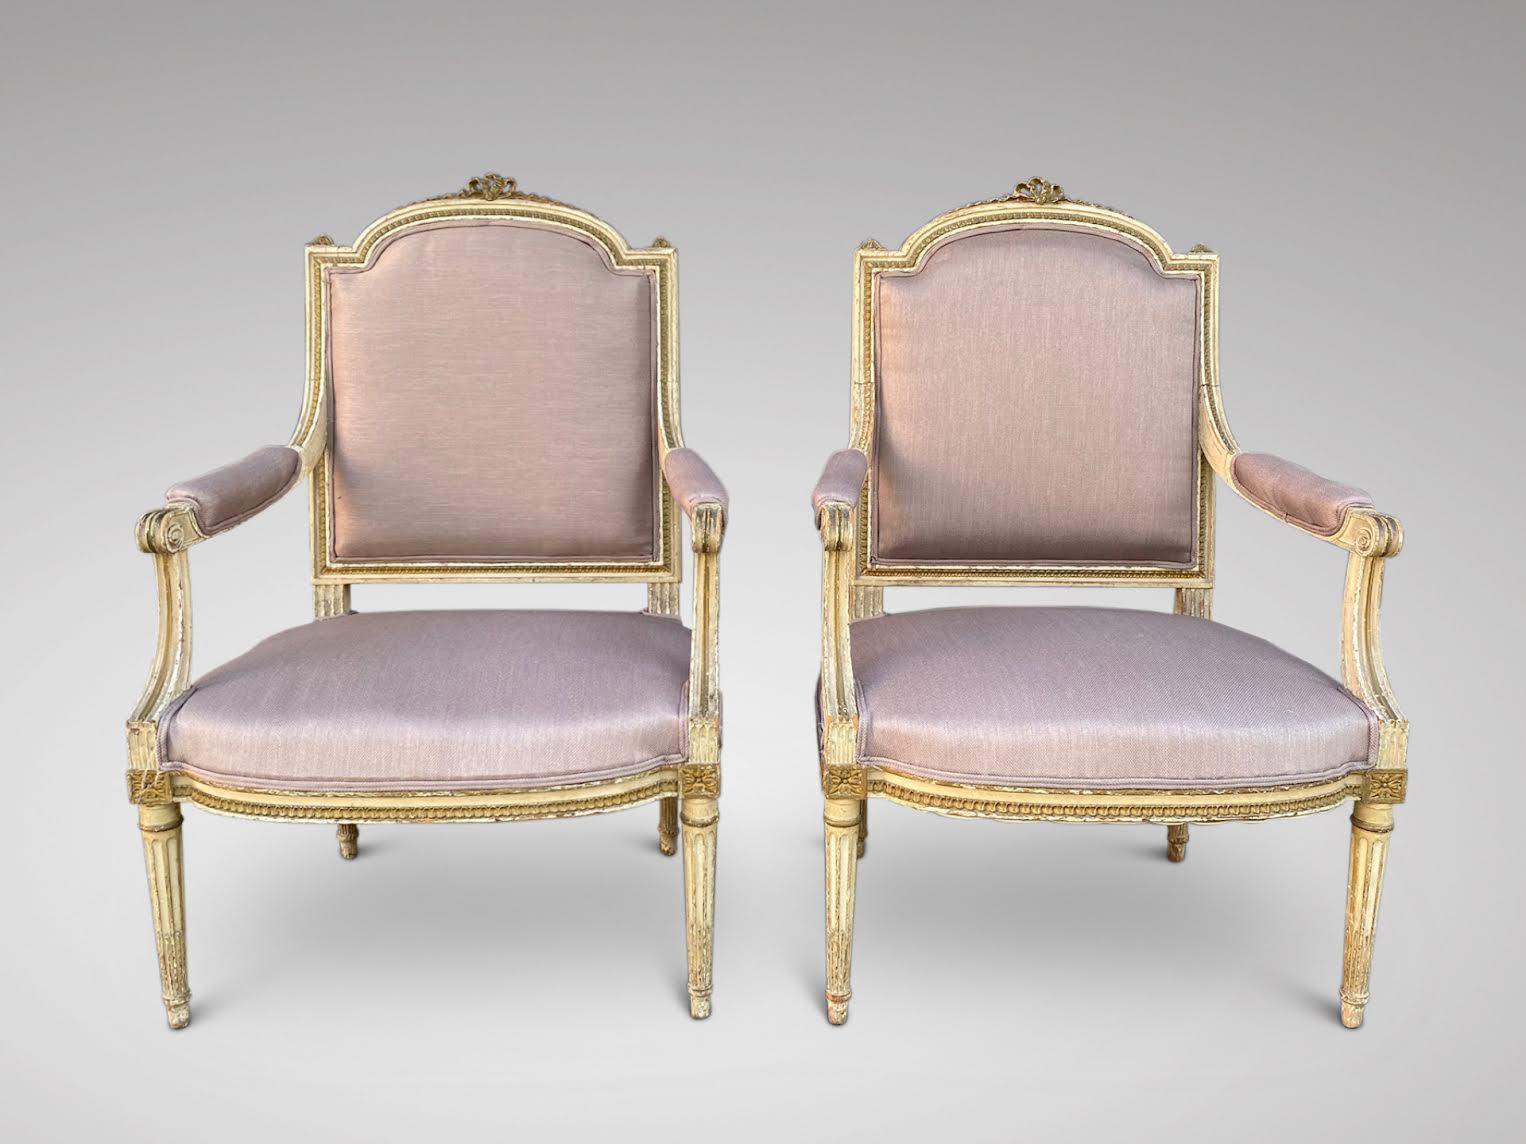 Ein atemberaubendes Paar bemalter, geschnitzter und gepolsterter Sessel im Louis-XVI-Stil des späten 19. Jahrhunderts. Originales cremefarbenes geschnitztes Holzwerk, originale Rosshaarfüllung, hessischer Bezug und neu gepolstert mit einem